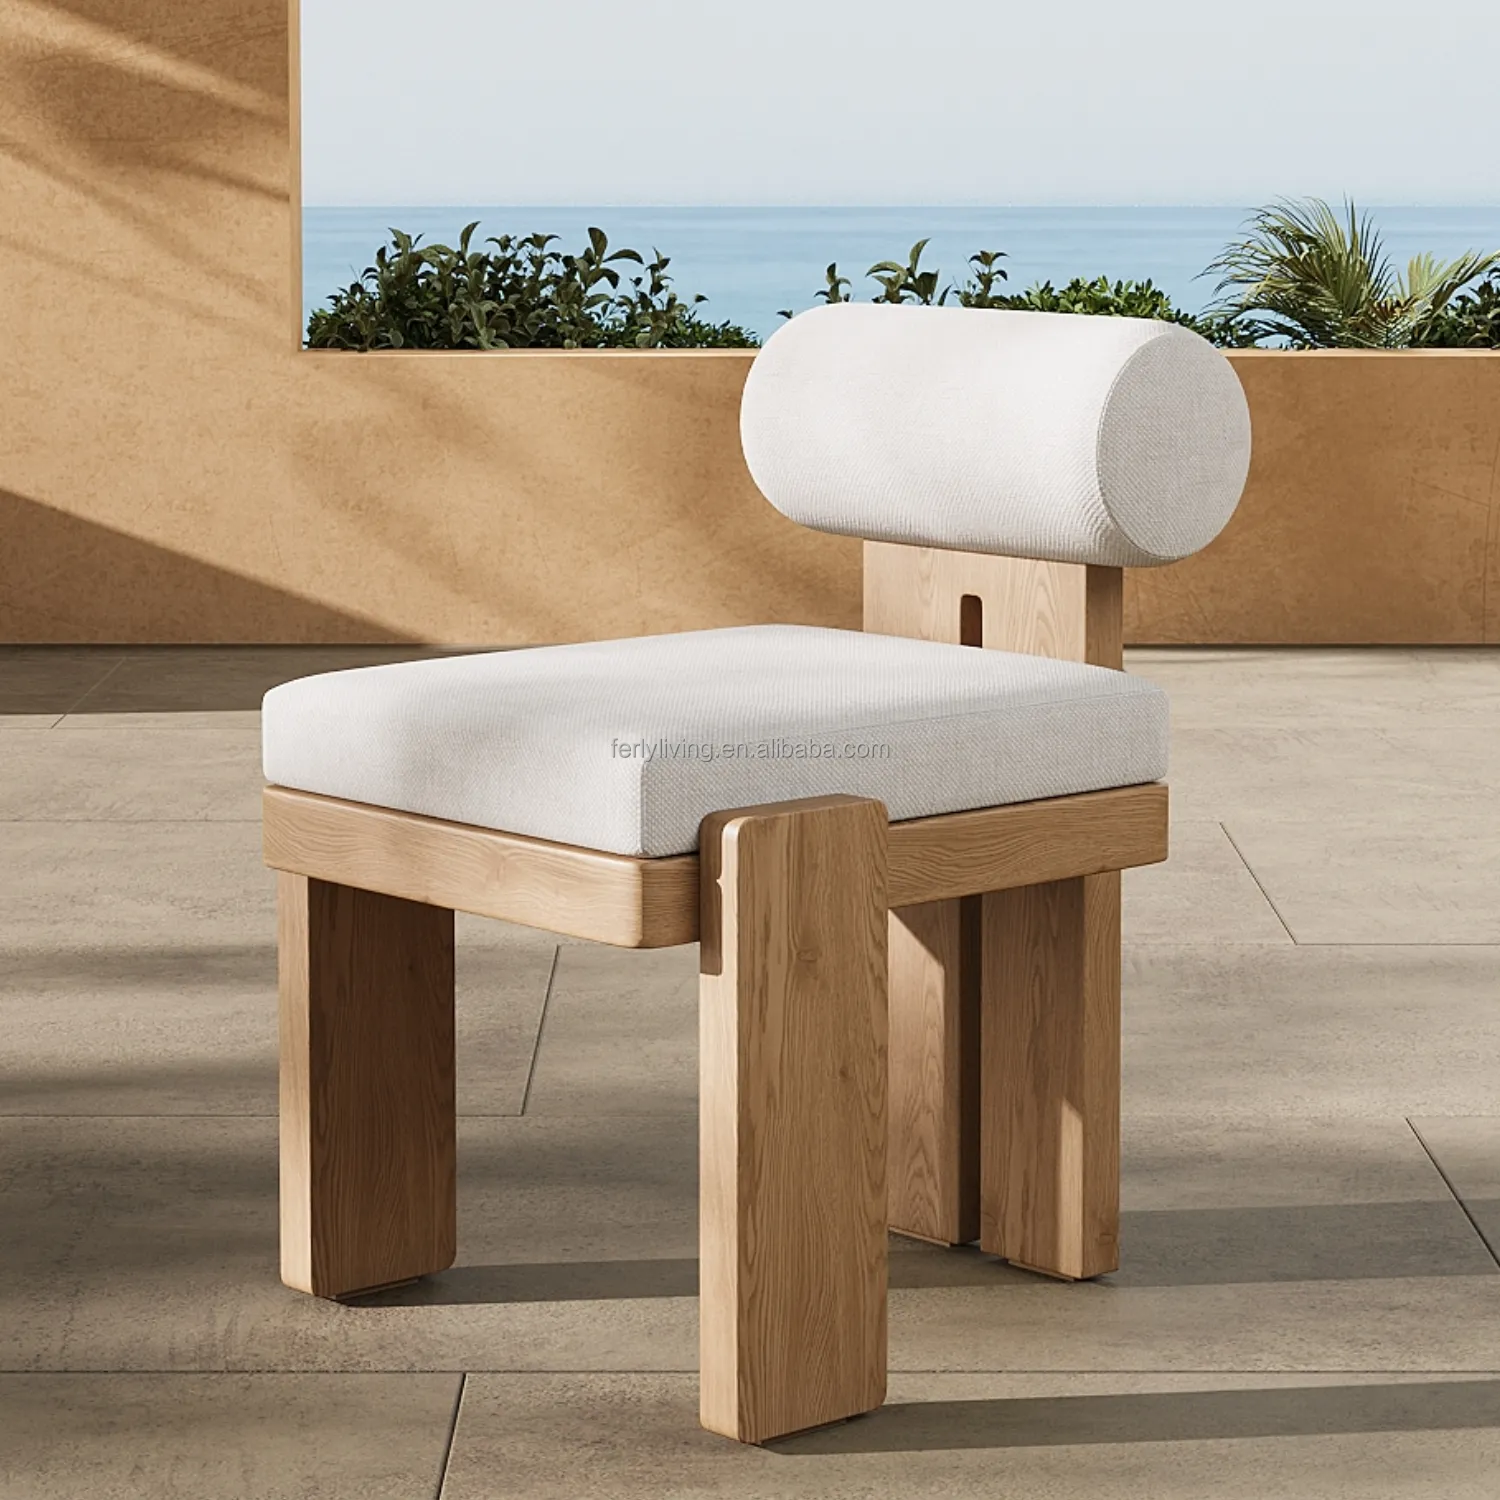 FELLY 새로운 디자인 현대 야외 정원 라운지 가구 다이닝 티크 안락 의자 수입 의자 세트